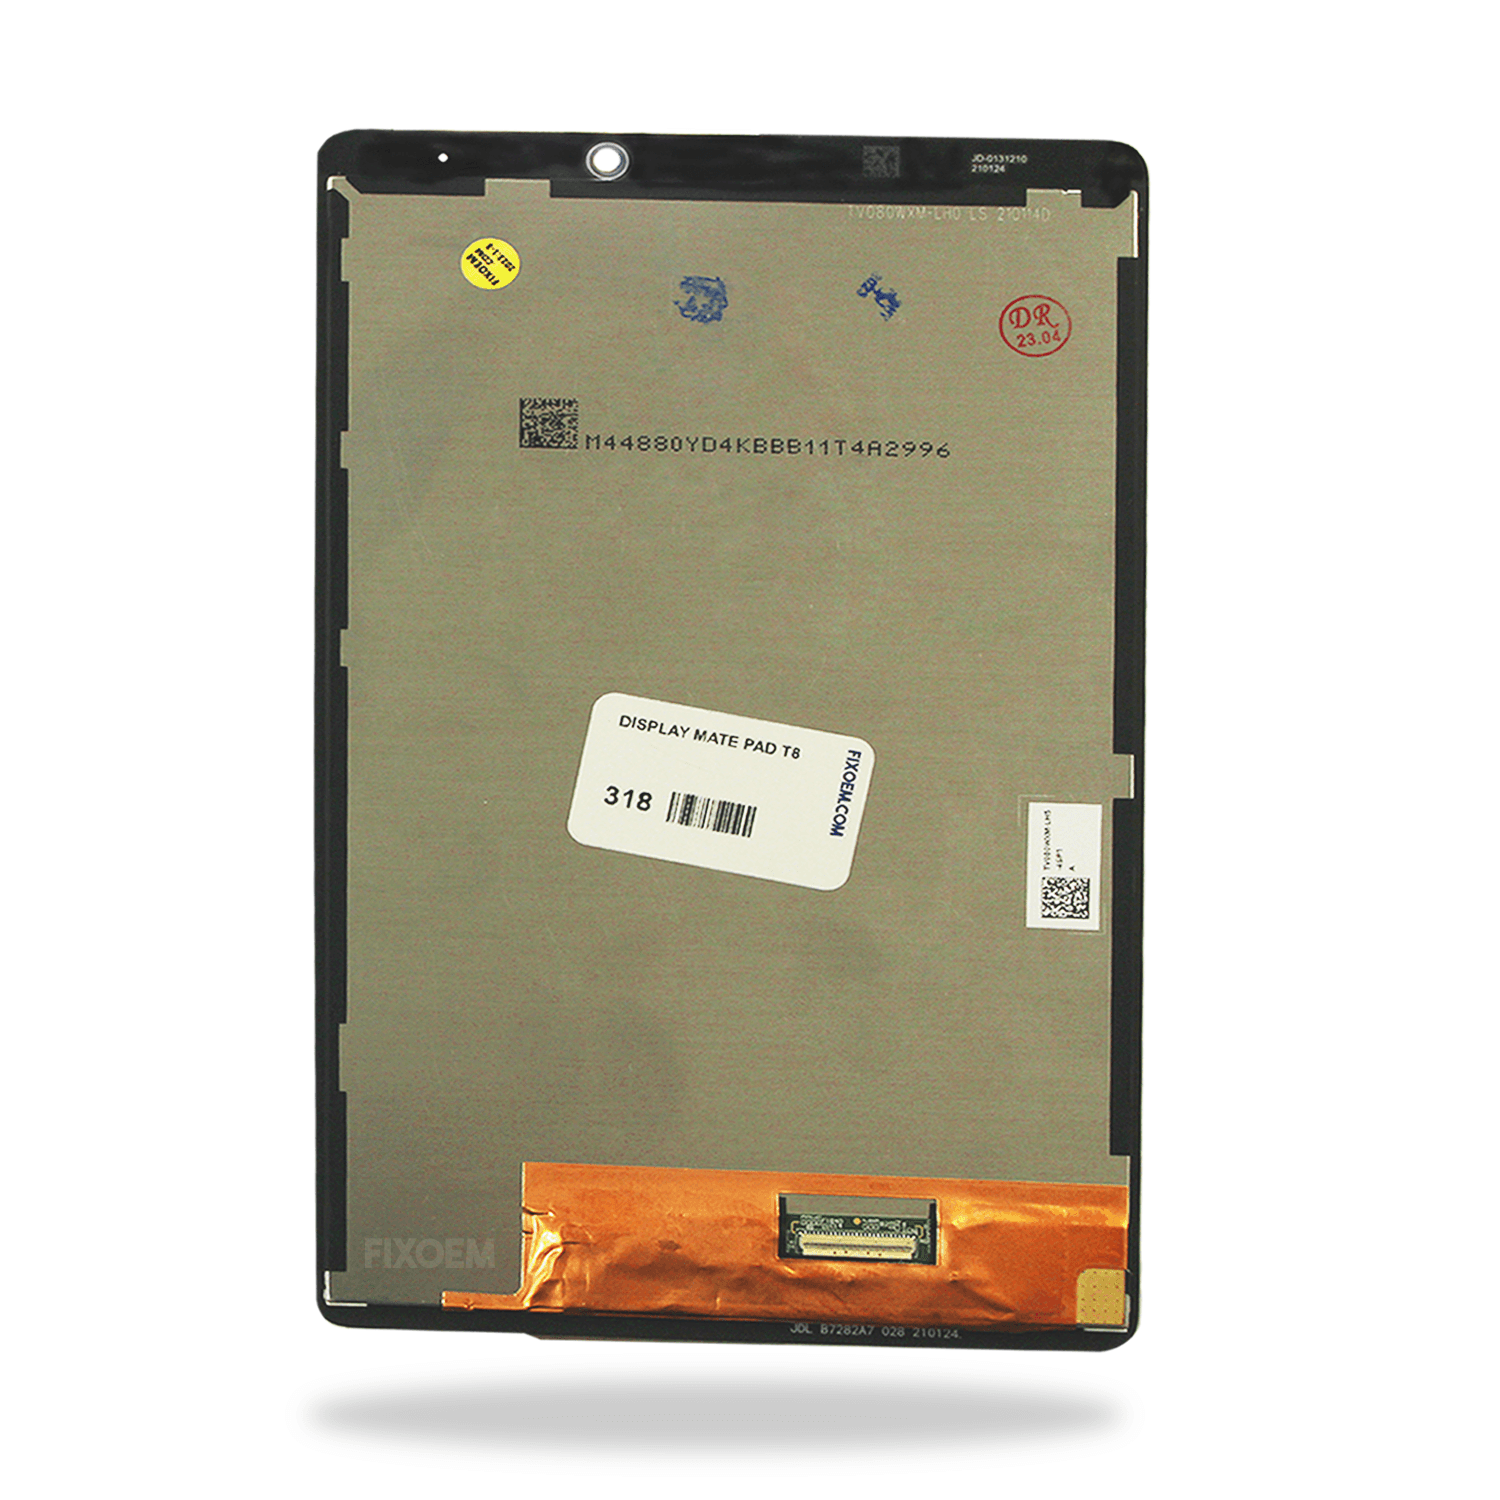 Display Huawei MatePad T8 Kobe2-l03 IPS a solo $ 310.00 Refaccion y puestos celulares, refurbish y microelectronica.- FixOEM